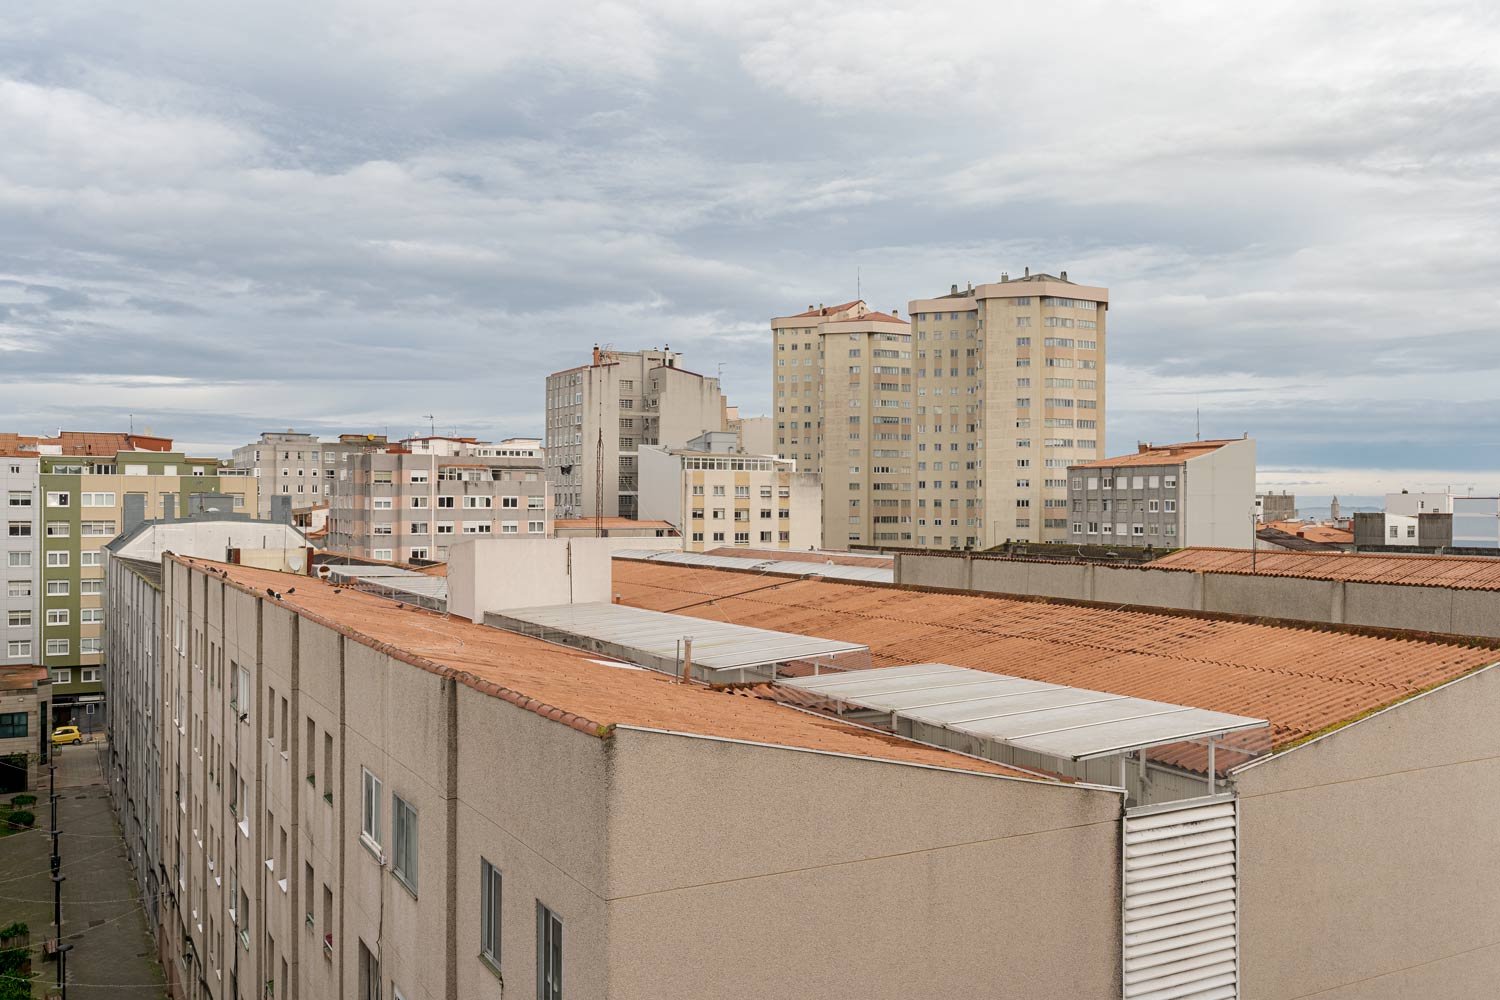 Vista urbana de A Coruña con edificios residenciales y techos de tejas bajo un cielo nublado.